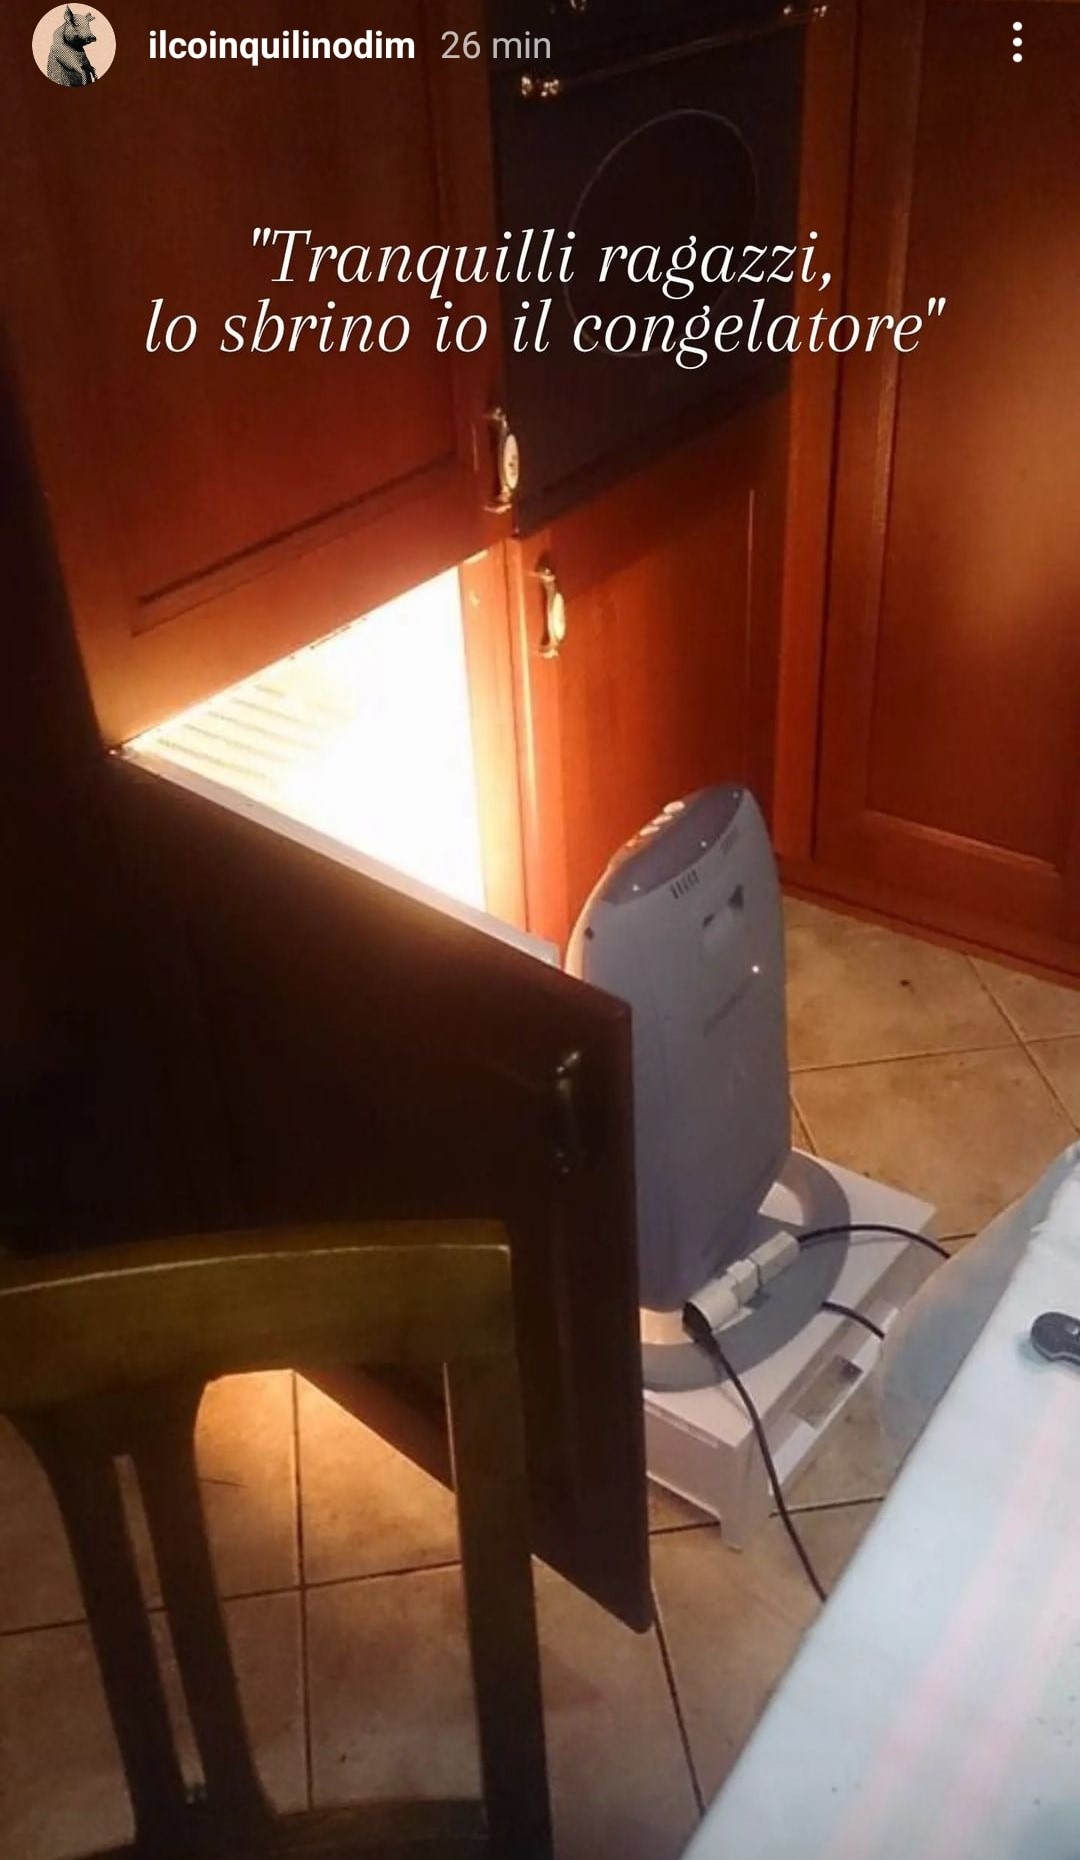 Uno studente fuorisede ha sbrinato così il congelatore. Tutto vero! Credits: ilcoinquilinodim - Instagram